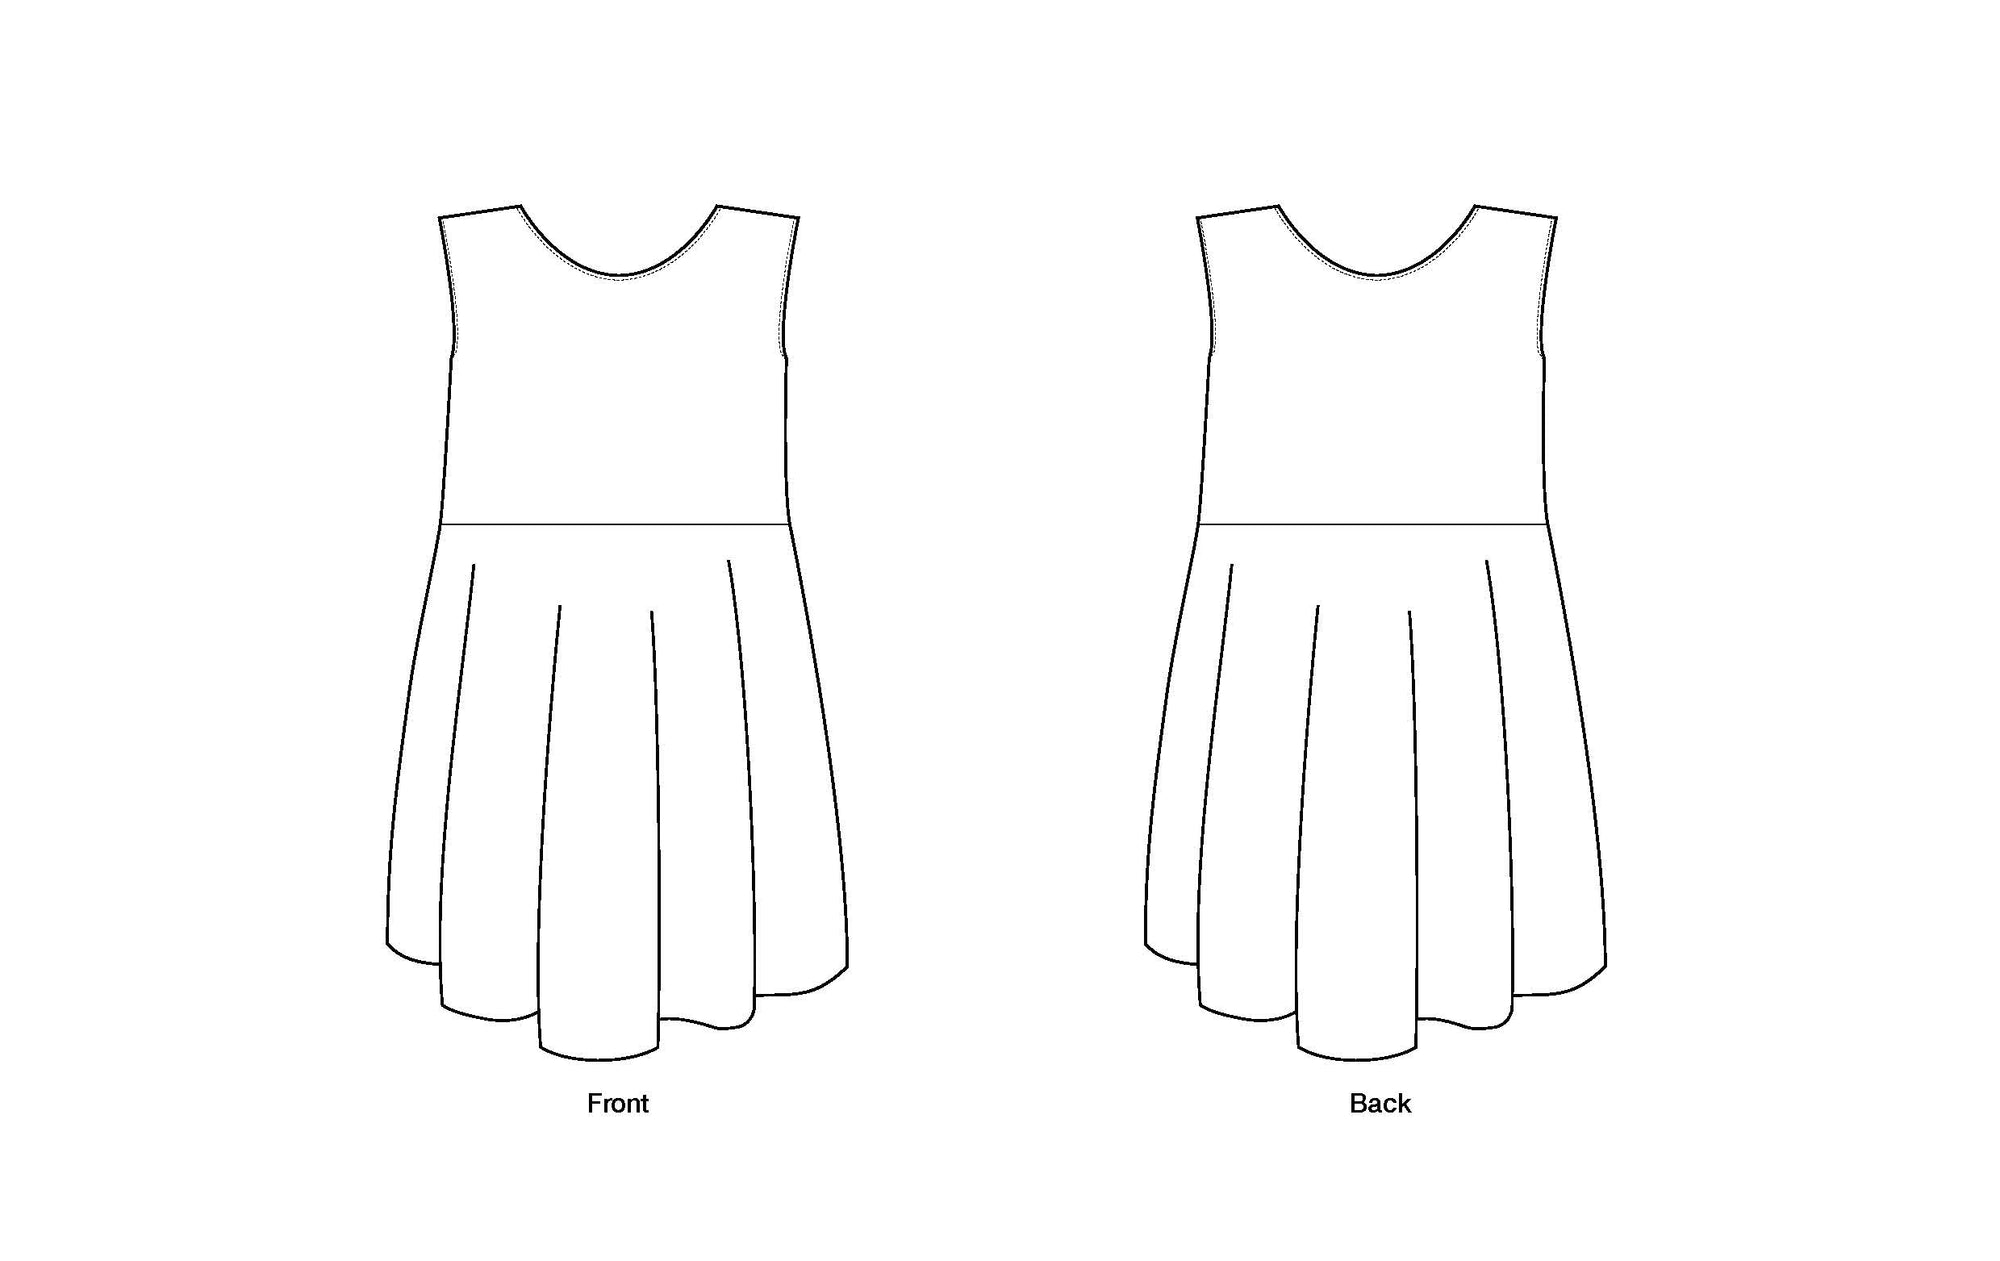 1920s Flapper Dress PDF pattern